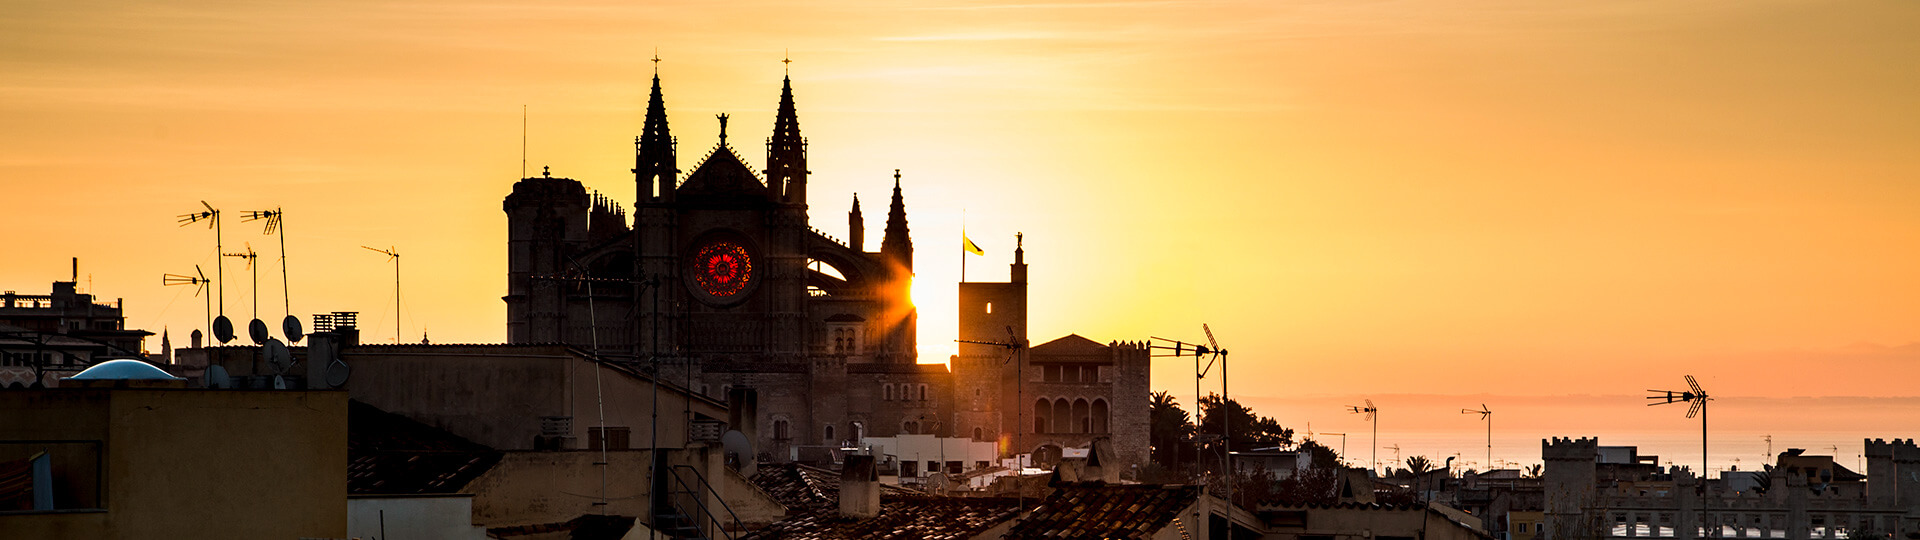 Kathedrale von Palma de Mallorca bei Sonnenuntergang